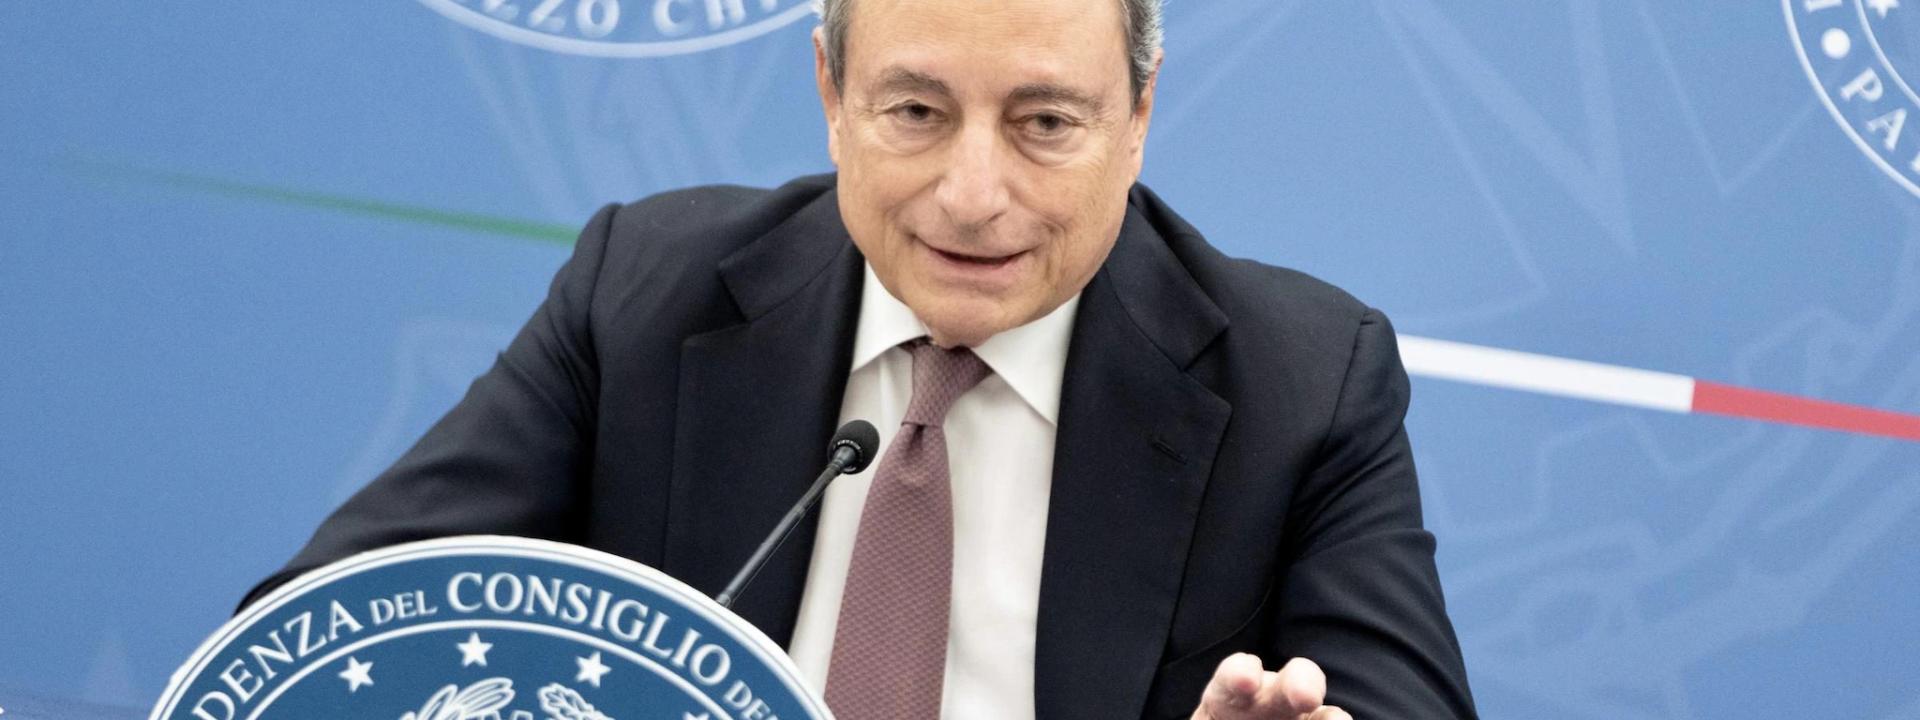 Corsa al Quirinale, per i bookmakers il favorito è Draghi